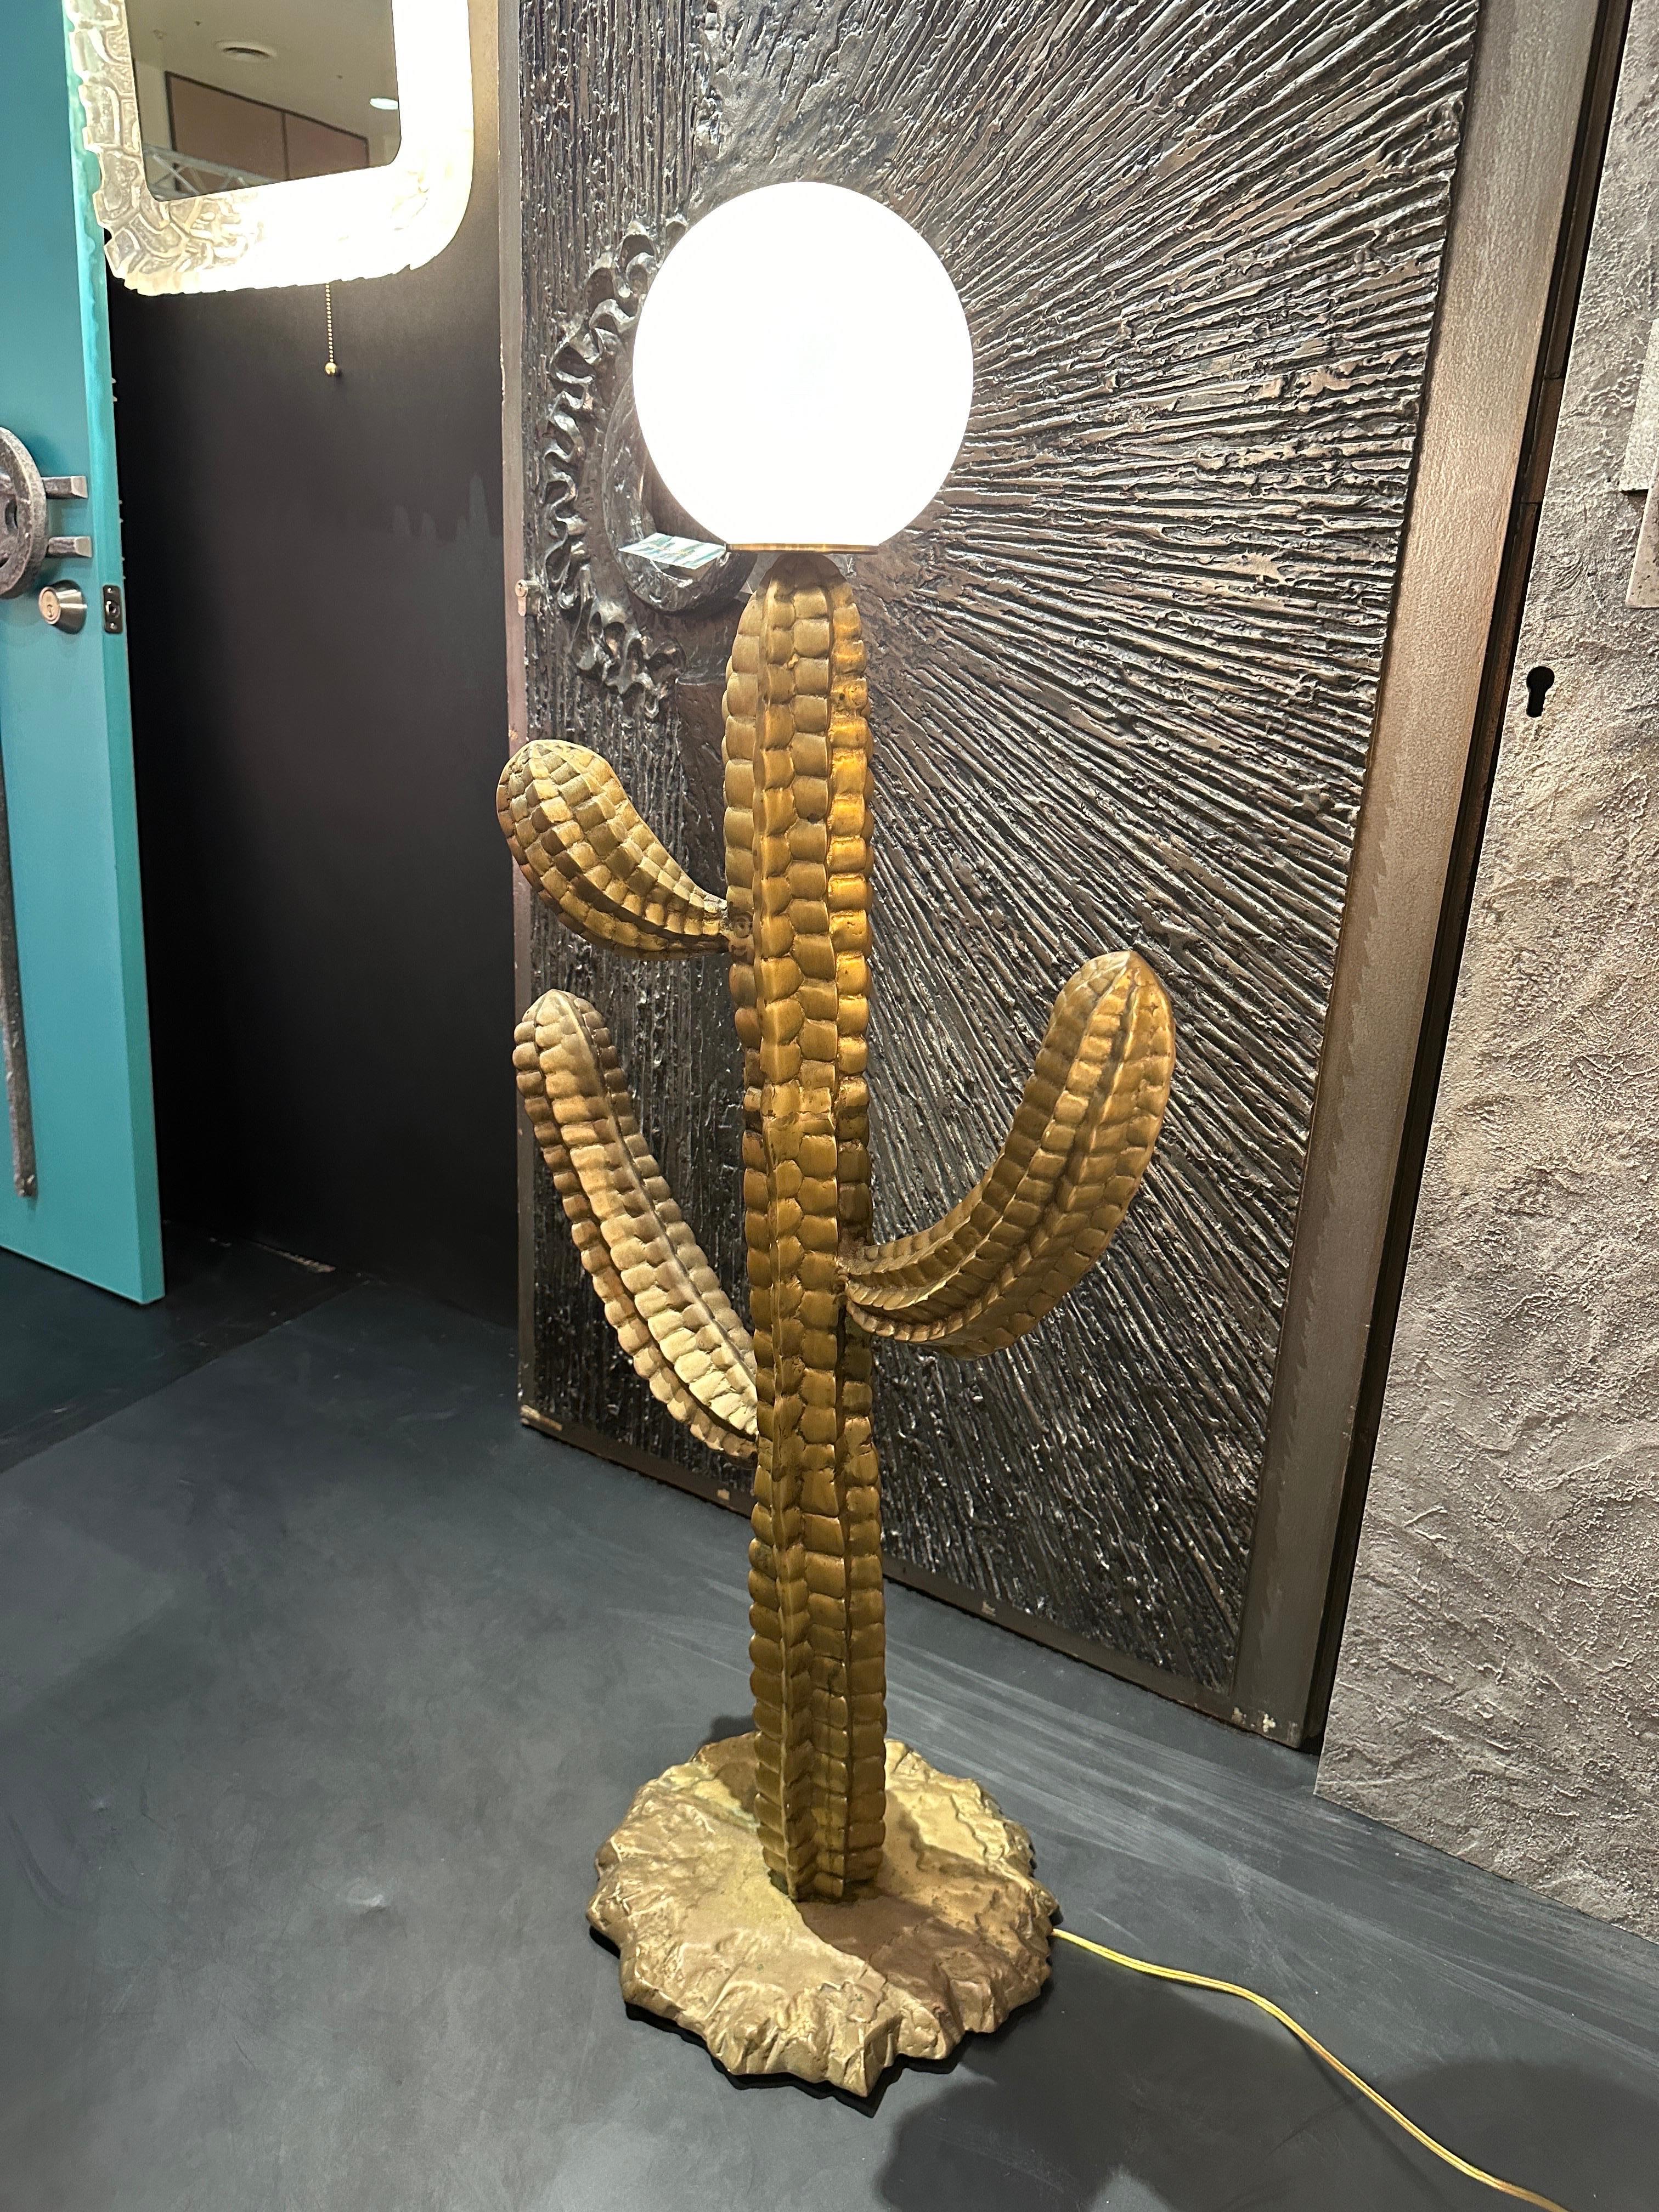 Große Kaktusskulptur aus Messing aus den 70er Jahren als Stehlampe montiert.
Der einzige Kaktus ist 40